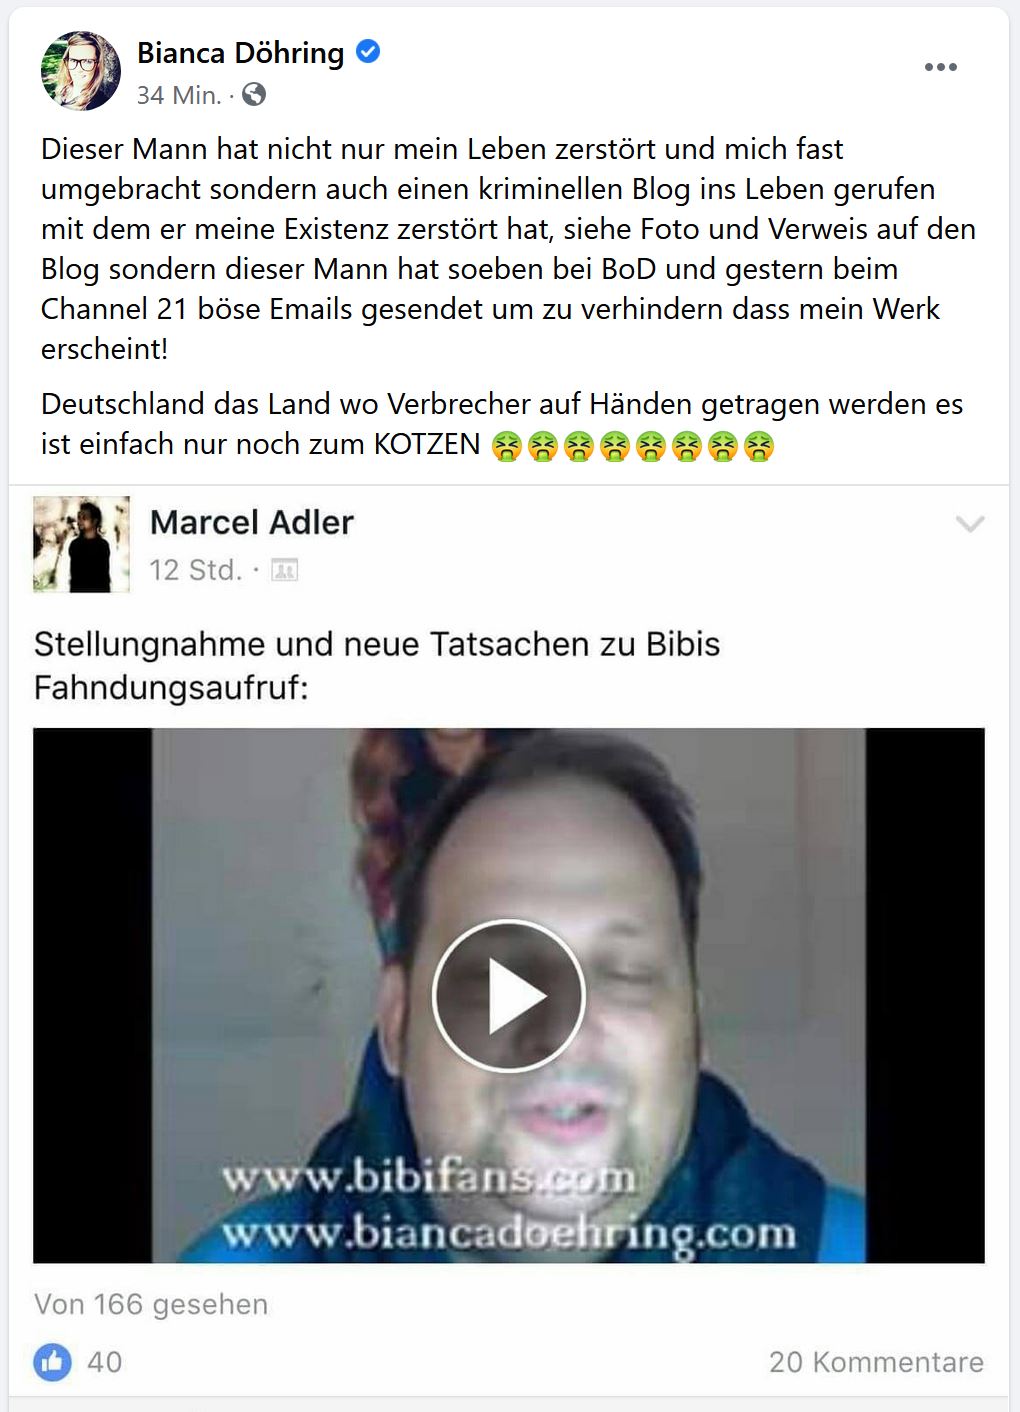 Marcel Adler lässt Cybermobbing Lügenbuch eingestampft - Bianca Döhring heult und droht - Drohung Gewalt Justiz Buch Verlag Anwalt